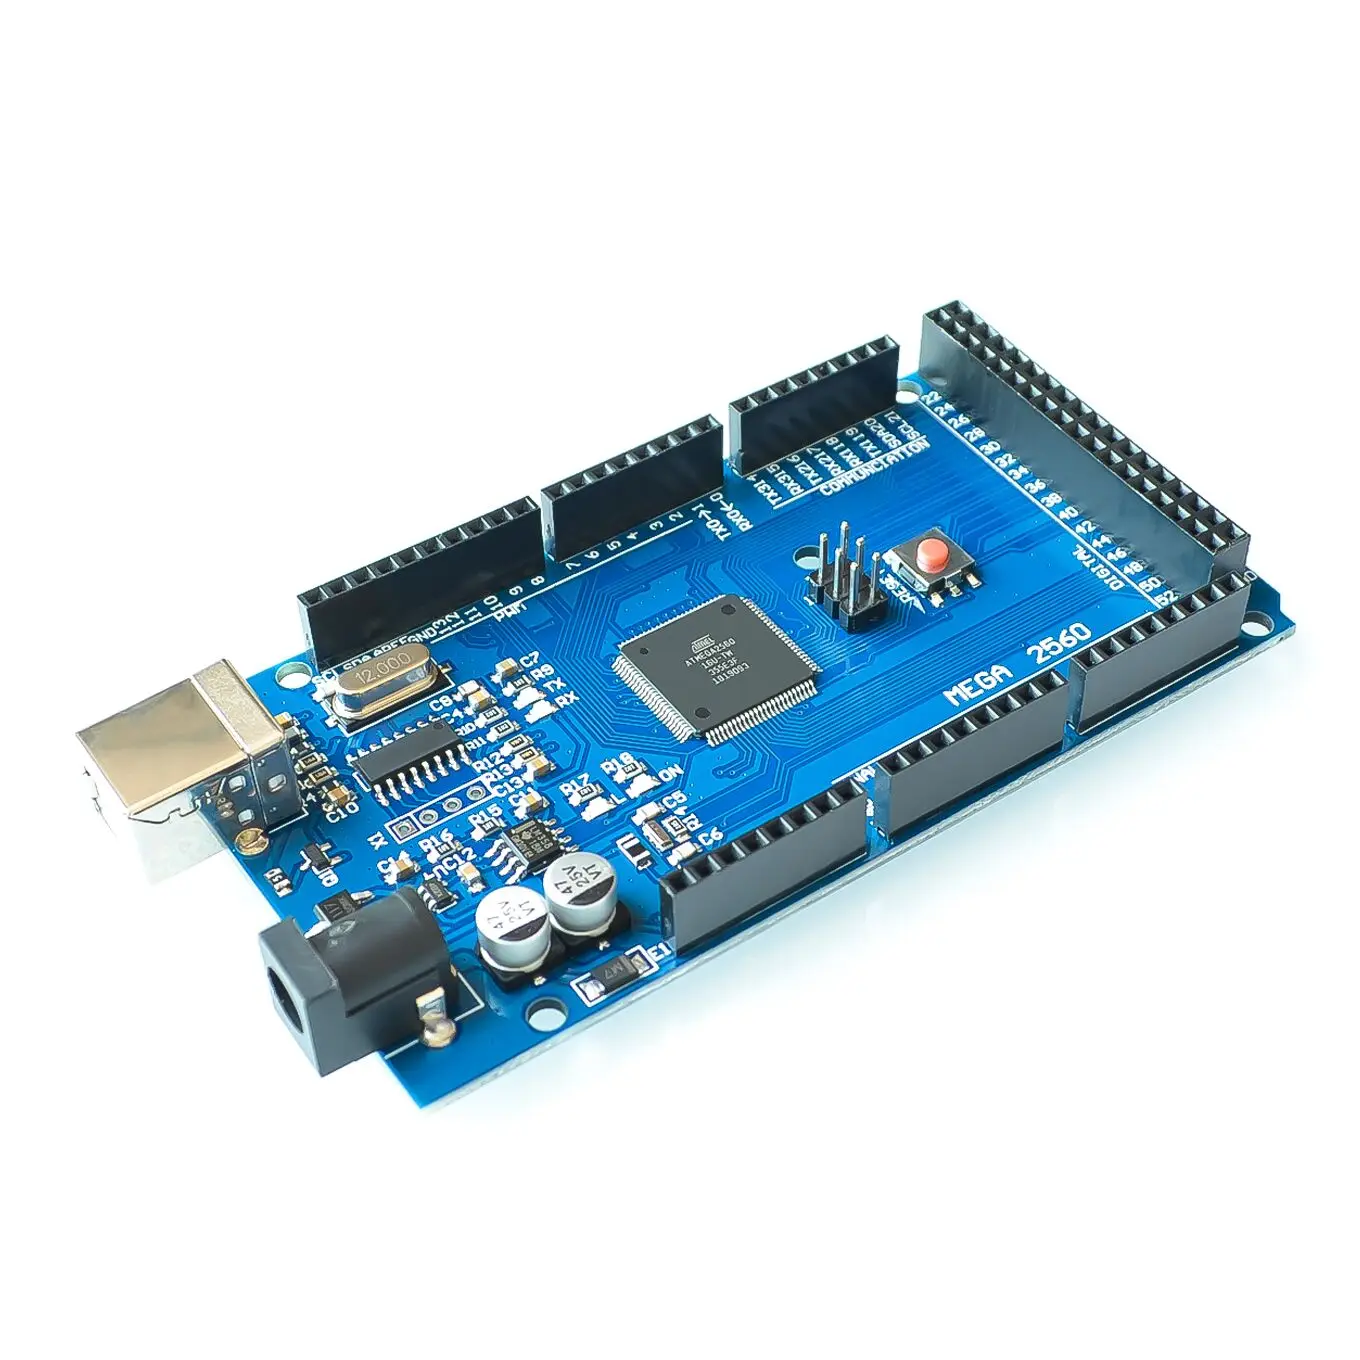 5 комплектов Mega 2560 R3 Mega2560 REV3 ATmega2560-16AU плата+ USB кабель совместимый для arduino